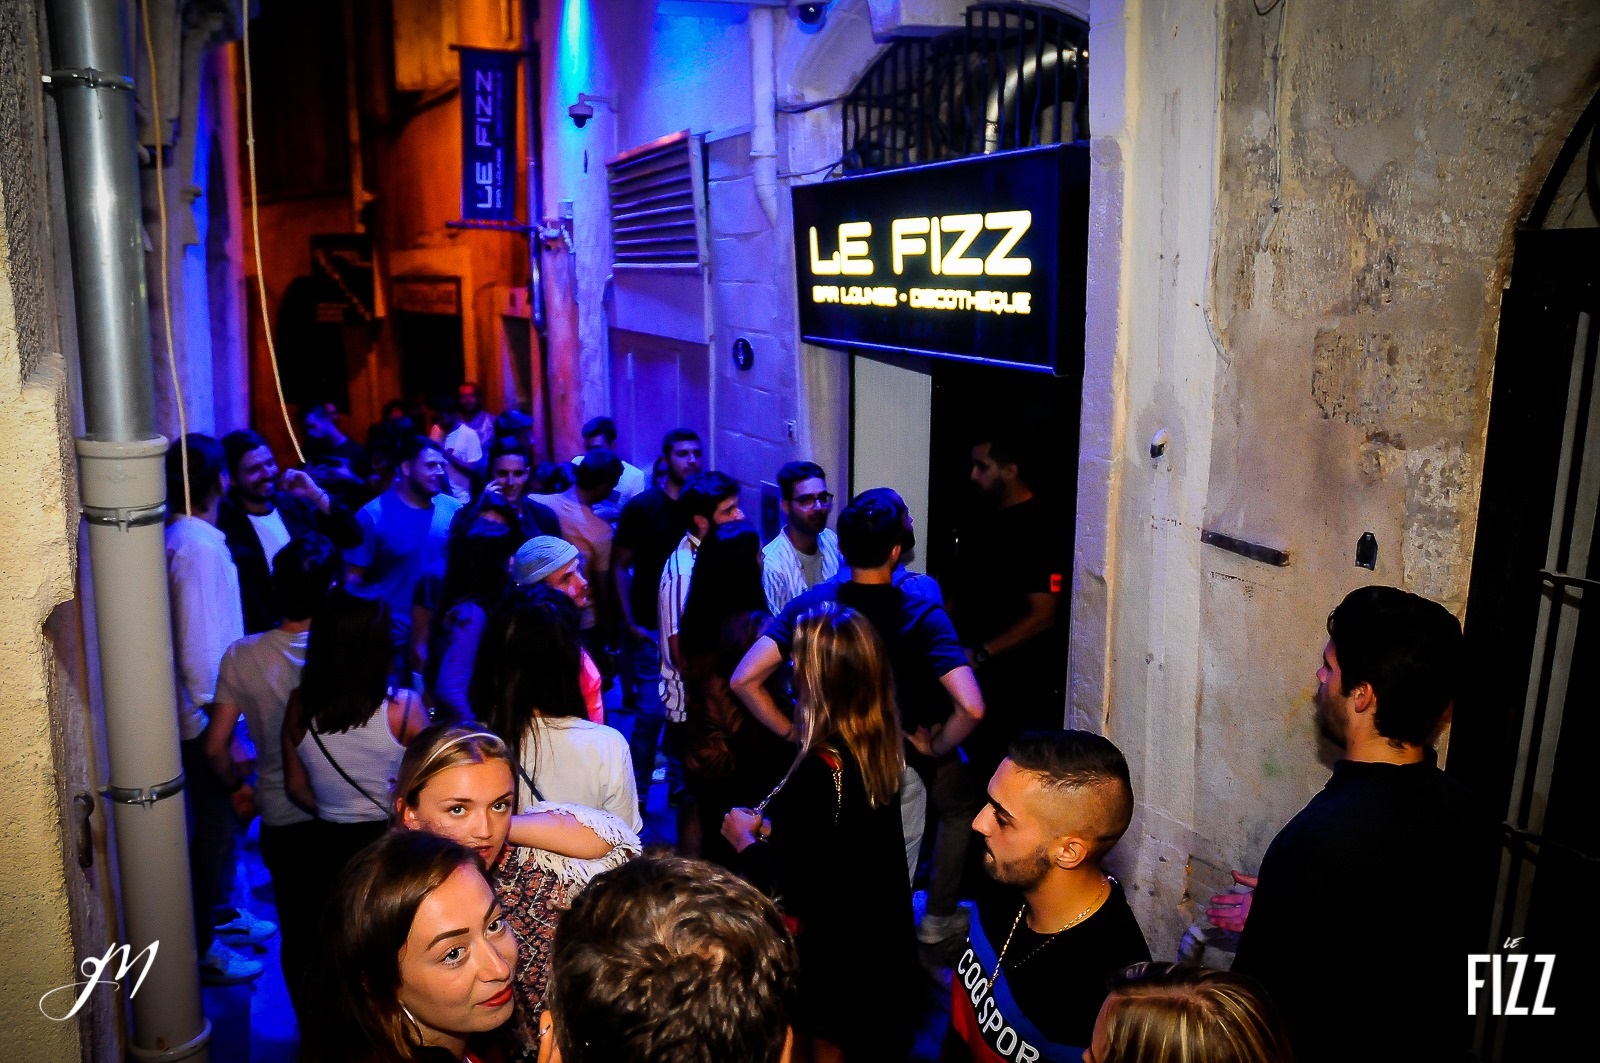 club discothèque le Fizz au centre-ville de Montpellier : Soirée 'CHIC DETAIL  CHOC ' du vendredi 14 avril 2017